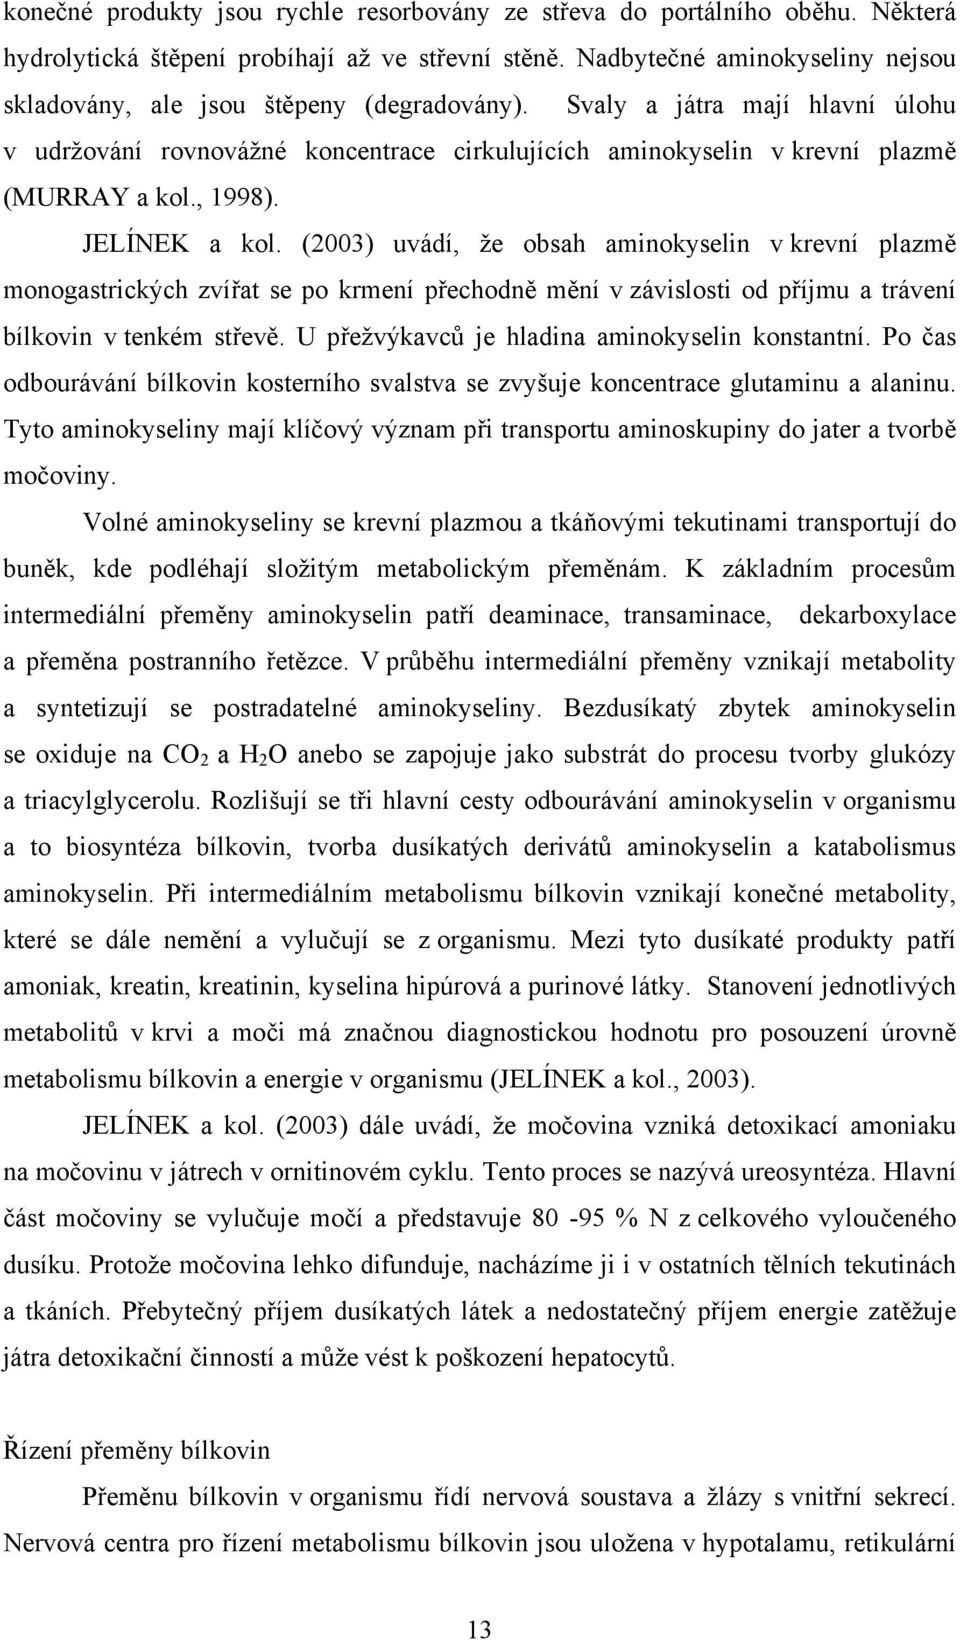 , 1998). JELÍNEK a kol. (2003) uvádí, že obsah aminokyselin v krevní plazmě monogastrických zvířat se po krmení přechodně mění v závislosti od příjmu a trávení bílkovin v tenkém střevě.